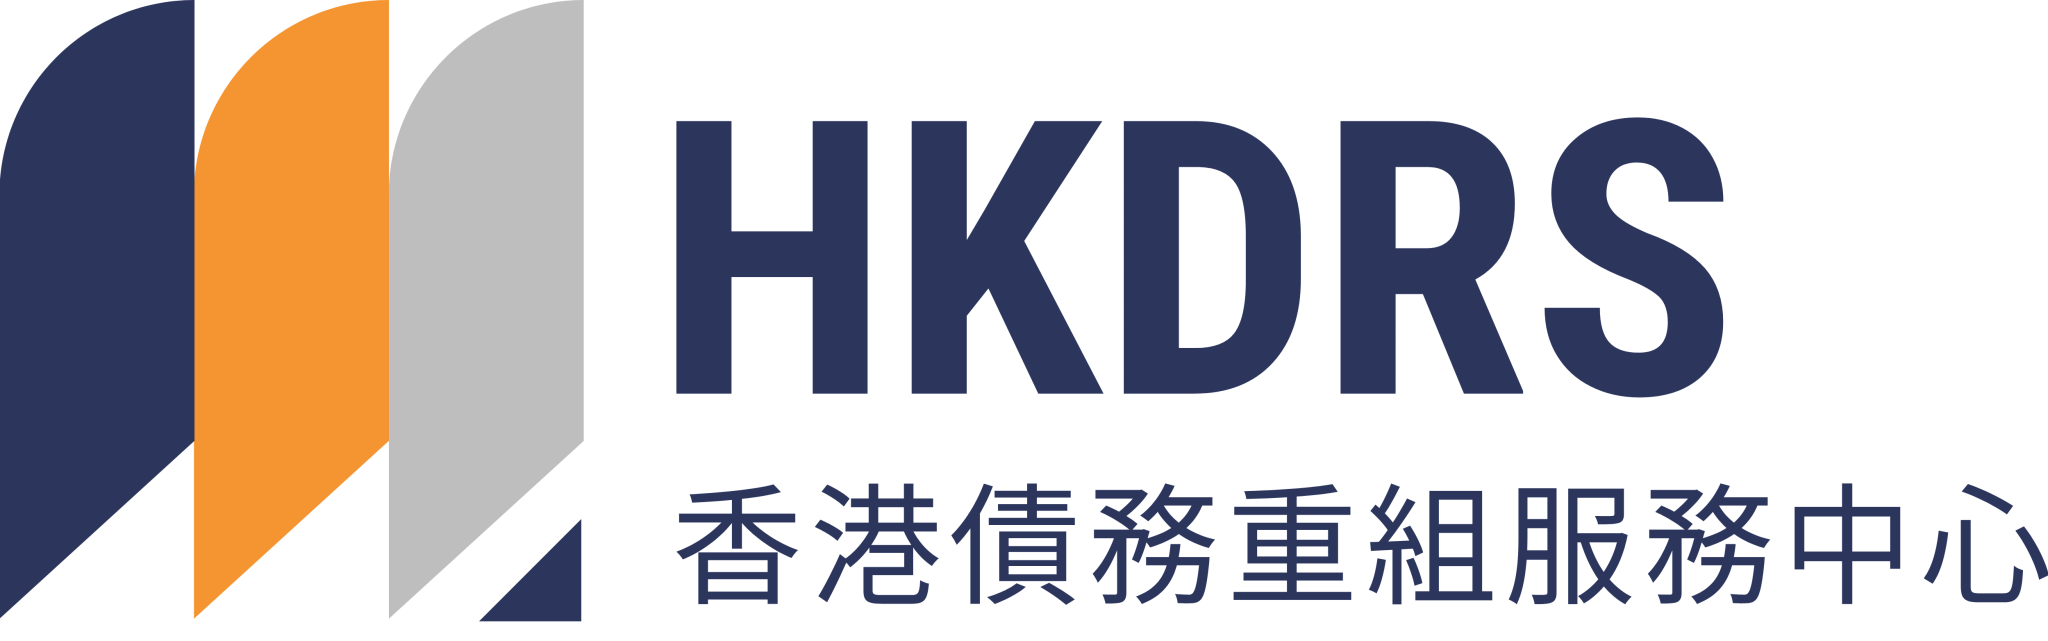 HKDRS 香港債務重組服務中心